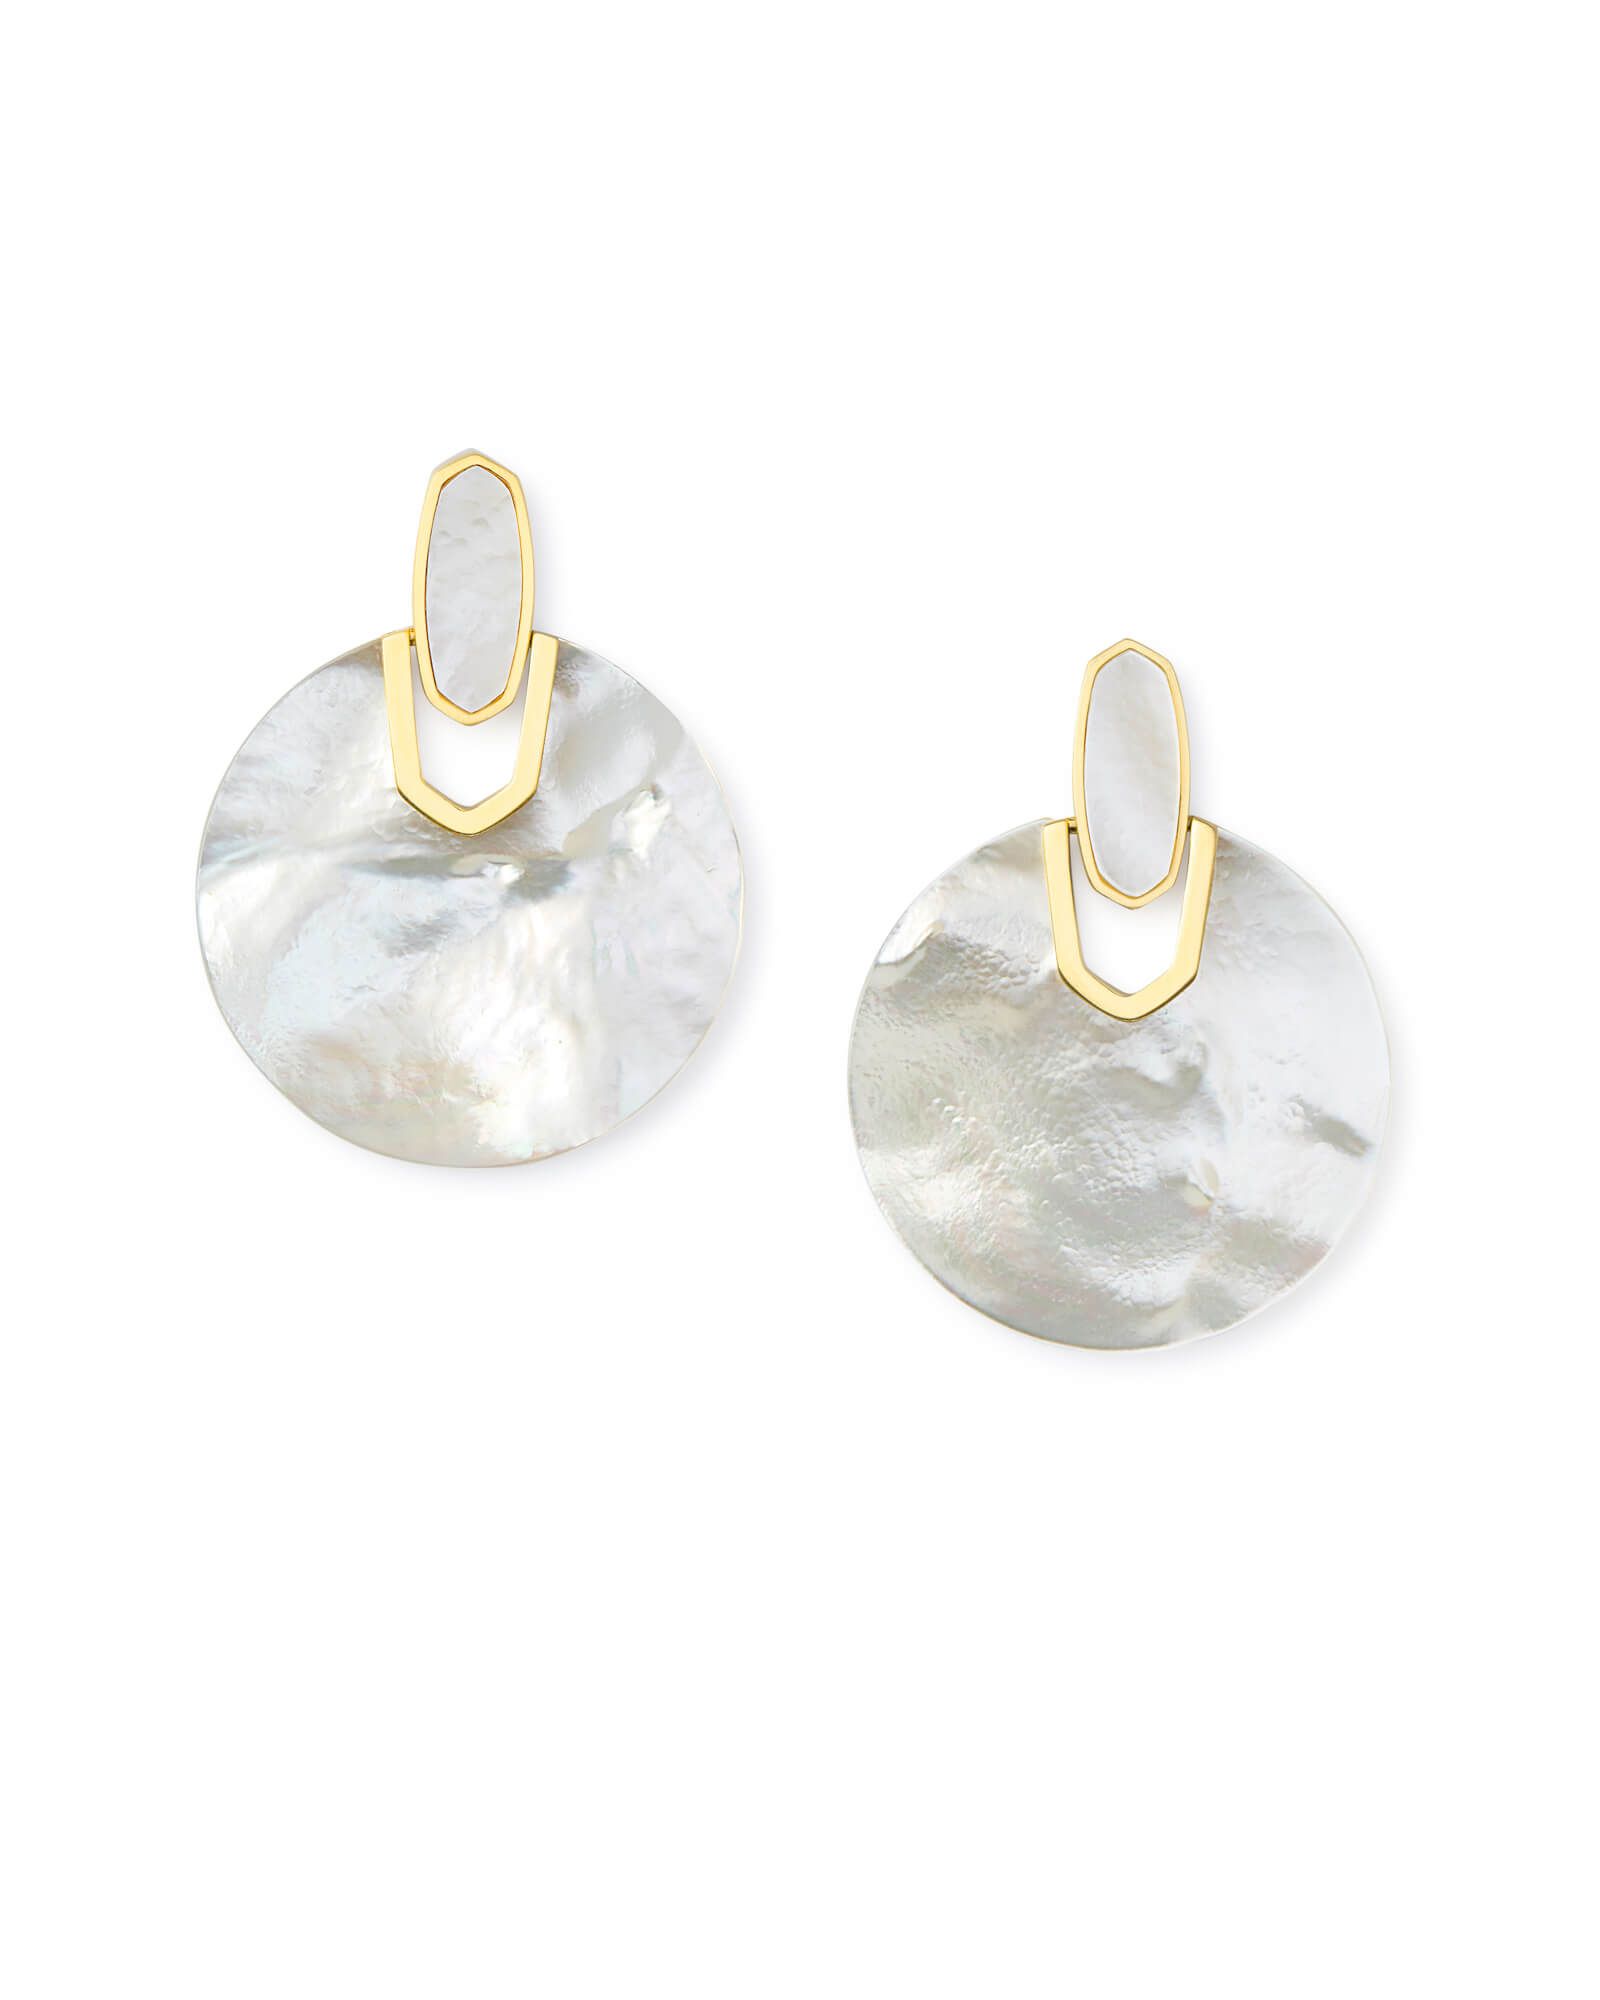 Didi Gold Statement Earrings in Azalea Illusion | Kendra Scott | Kendra Scott